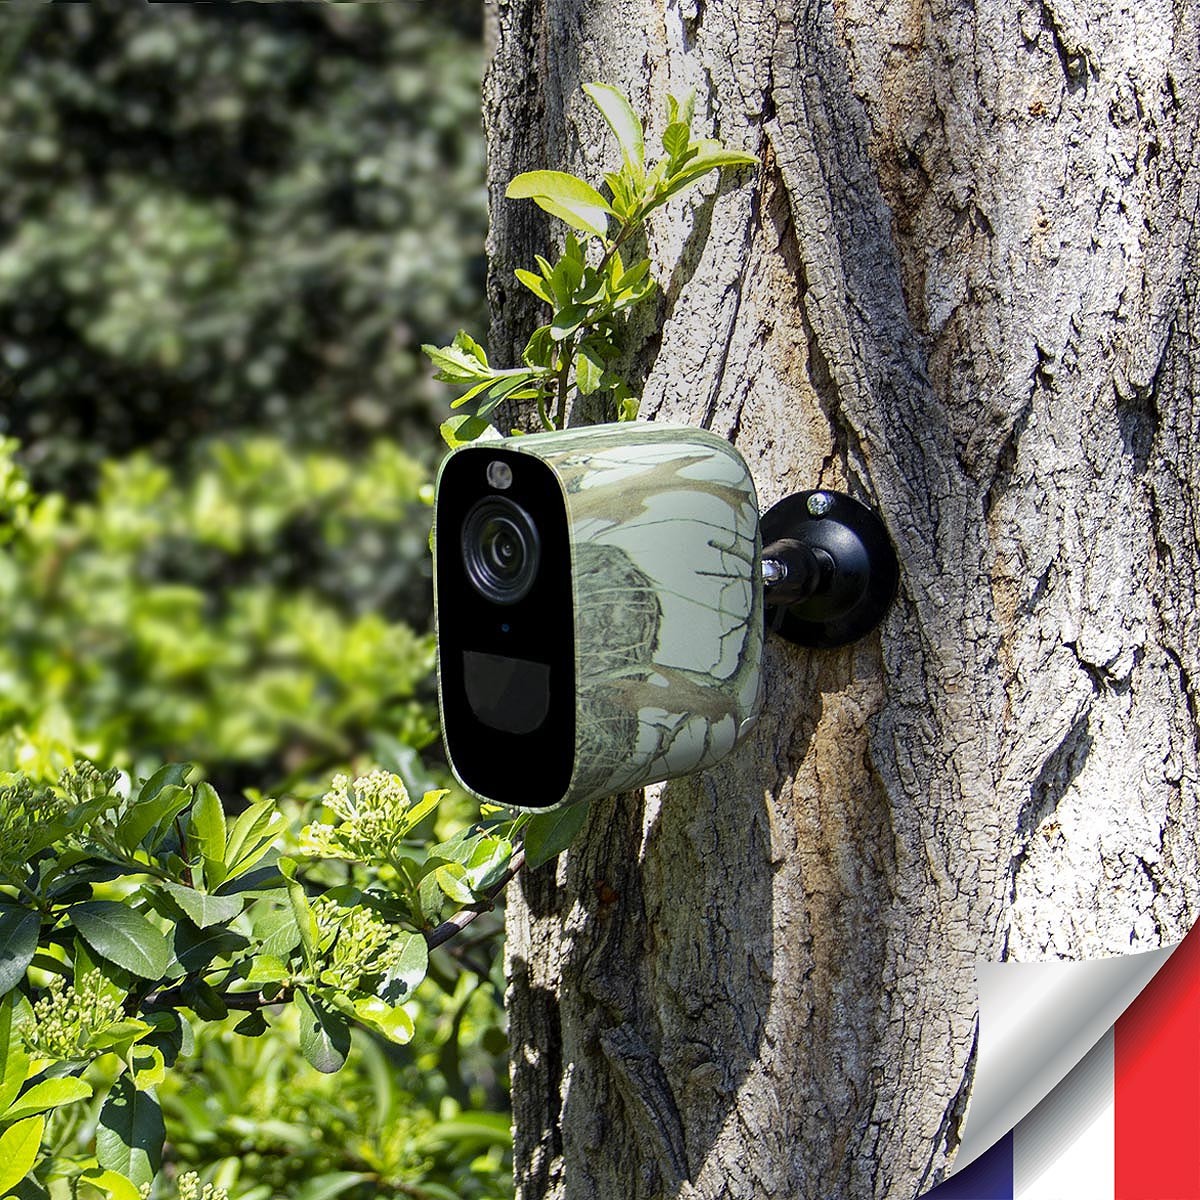 Smart caméra 4G camouflage 4Mpx 2K infrarouge invisible très longue autonomie detection de mouvement et humaine 128Go